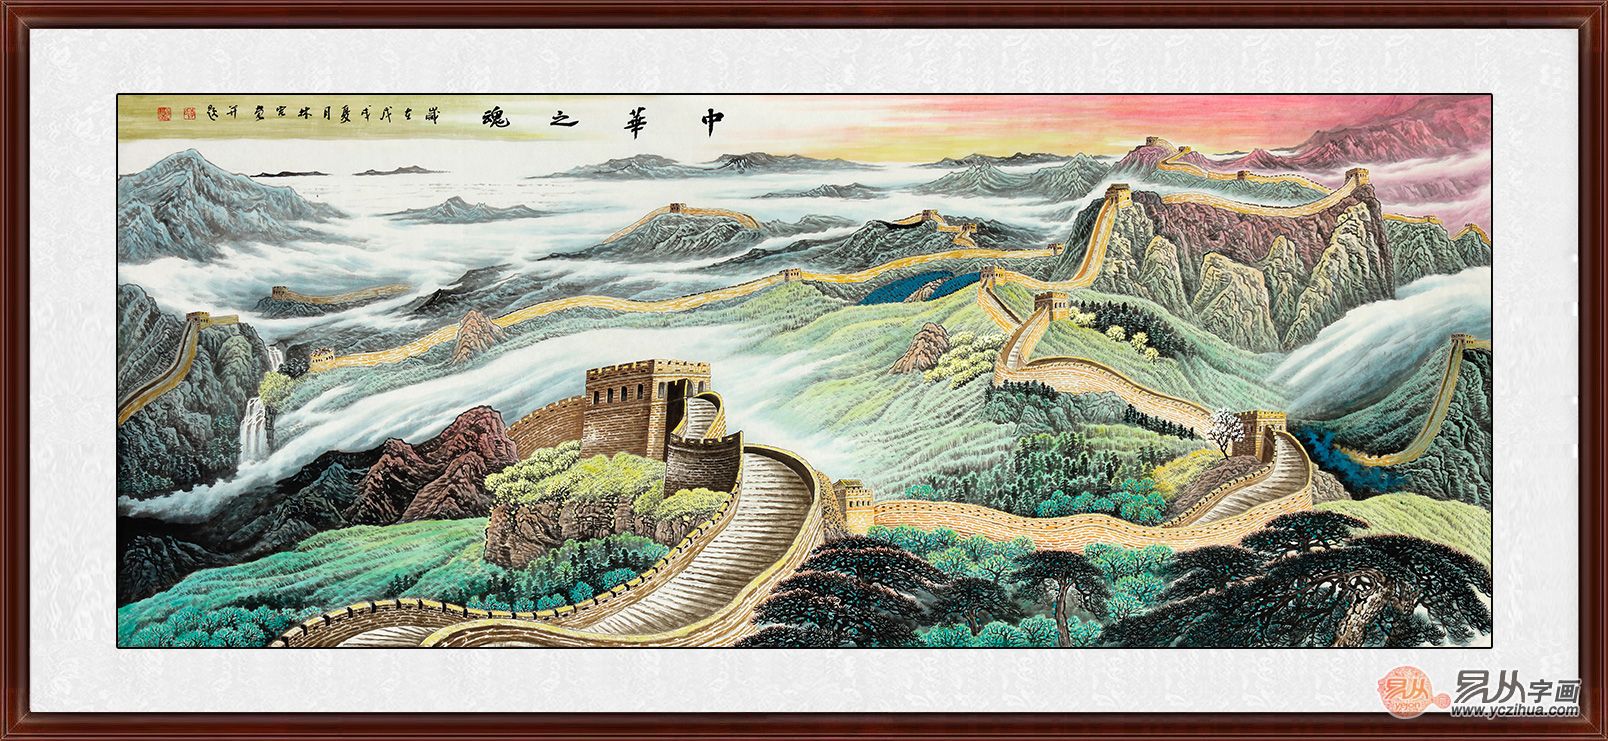 《中华之魂》正是家居风水坚固大靠山的存在,国画长城图挂在家中最有